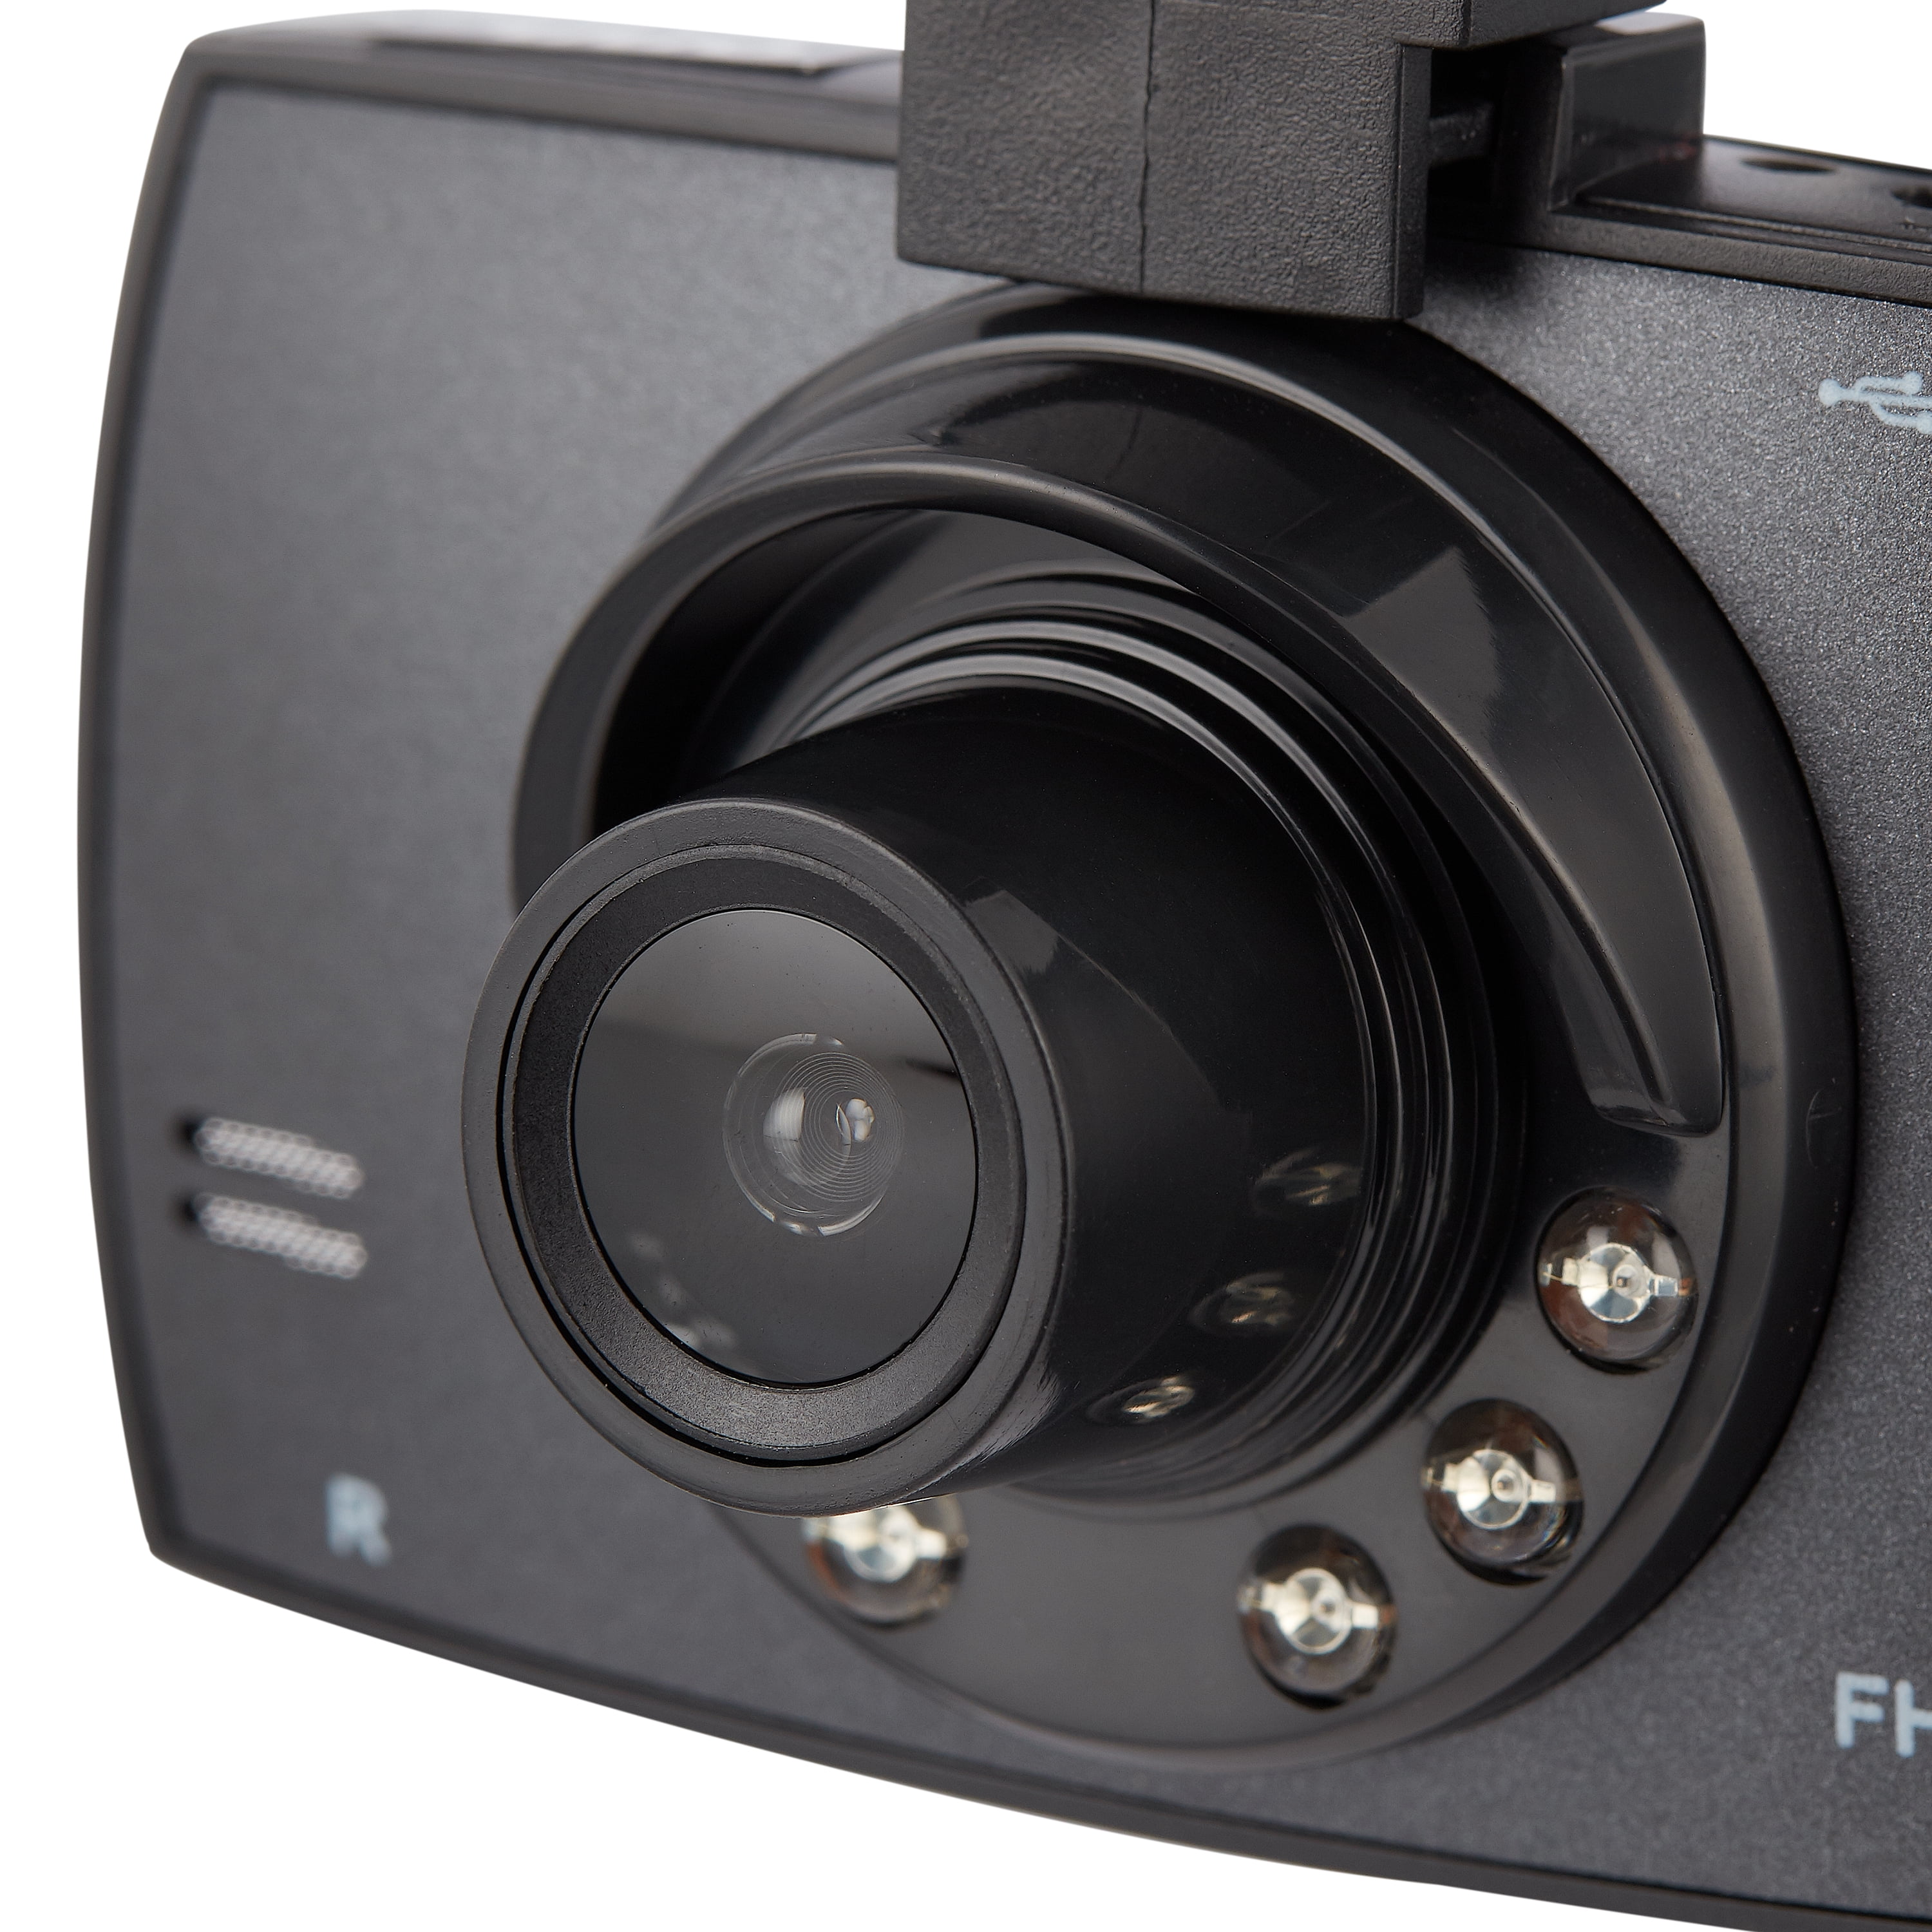 onn. 1080p HD Black Car Dash Cam, 2.4 LCD Screen, 110 Degree